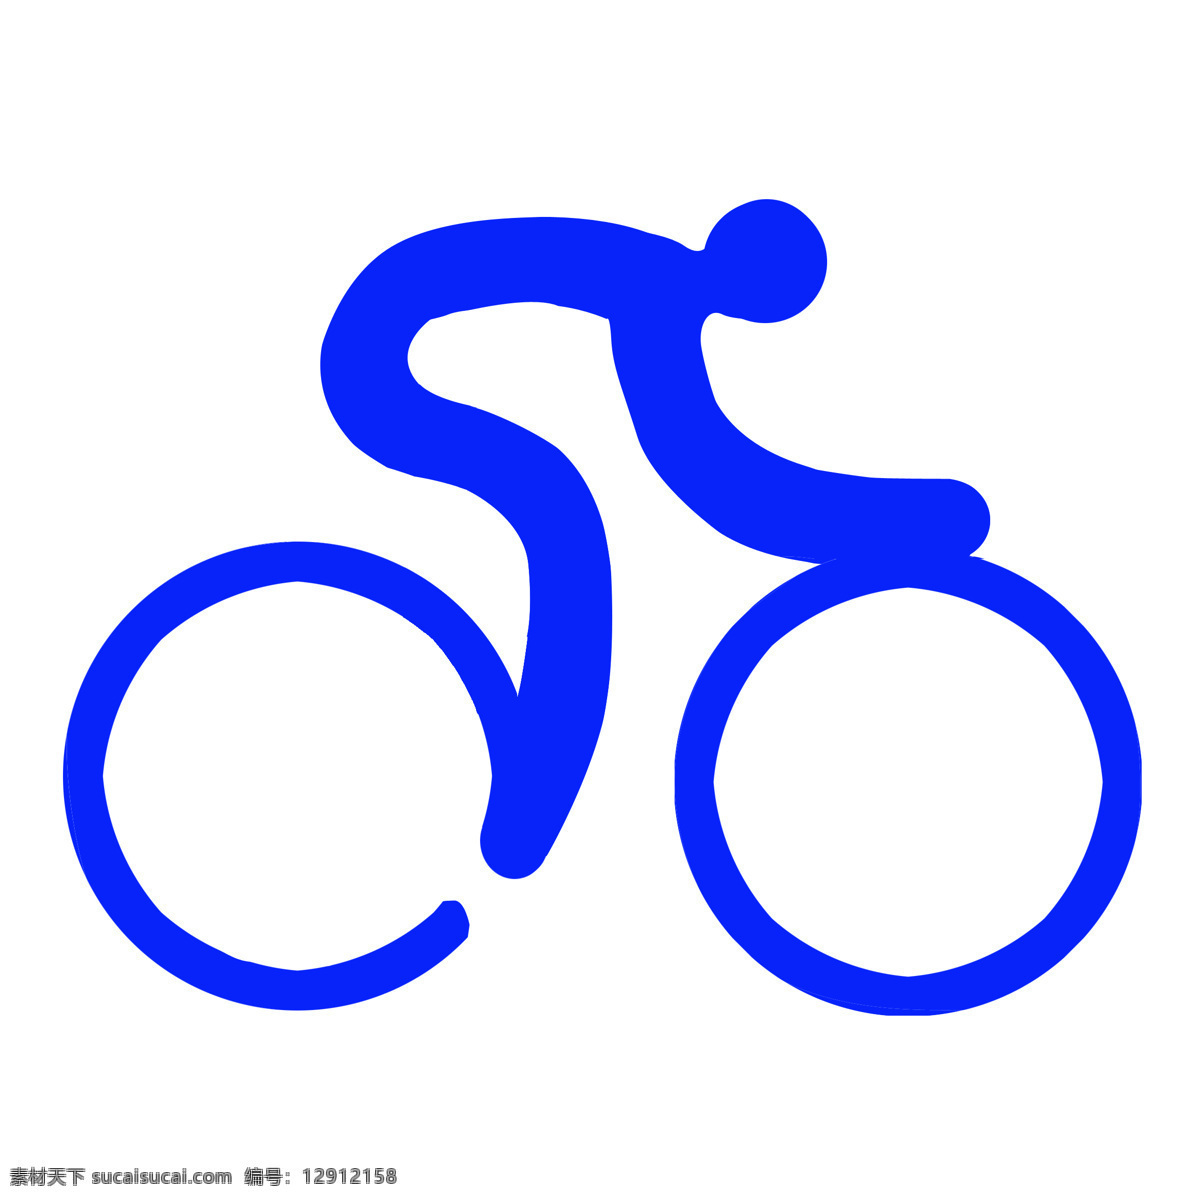 体育运动 项目 标识 体育 运动项目 自行车 骑车 标识图标 公共标识标志 标志图标